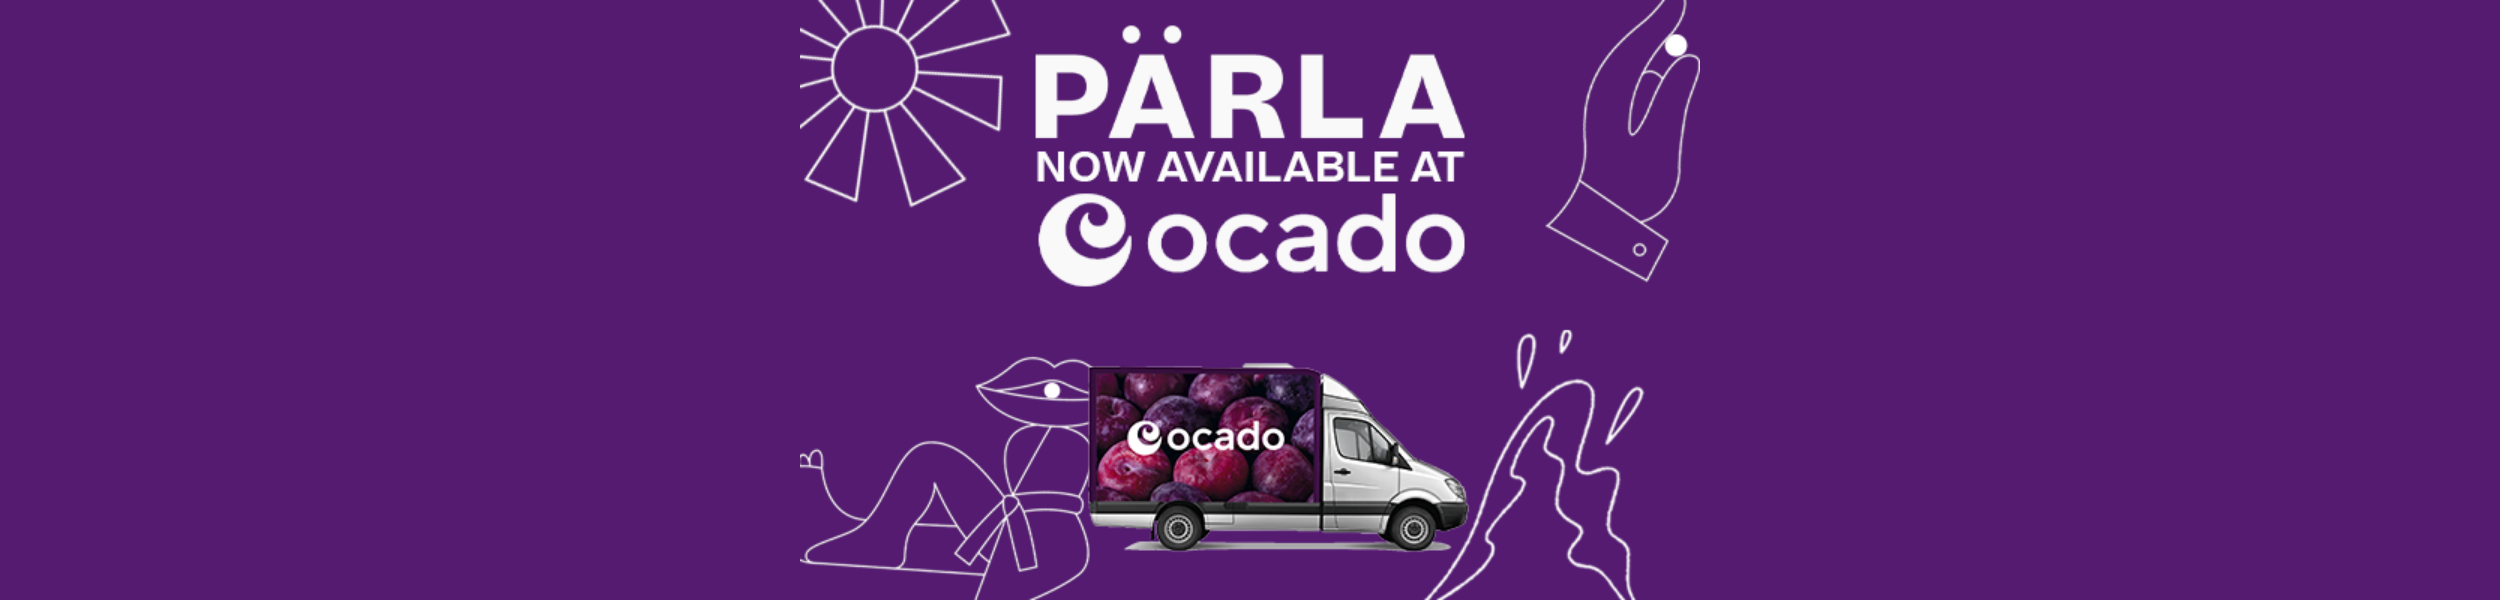 PÄRLA has launched into Ocado!!